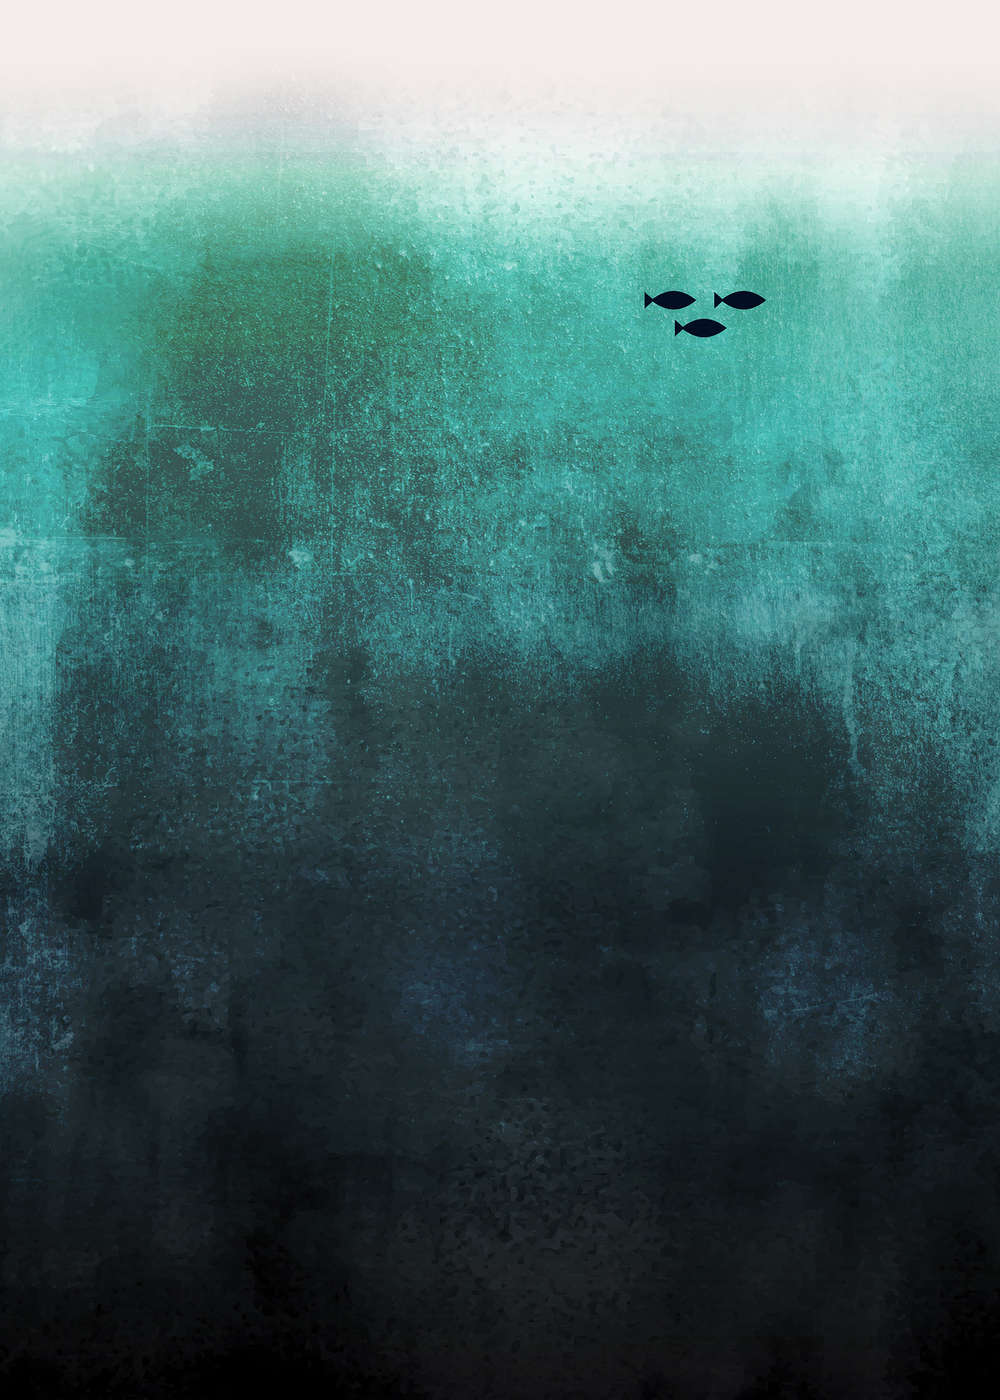             Papel Pintado Submarino Abstracto Océano con Familia de Peces
        